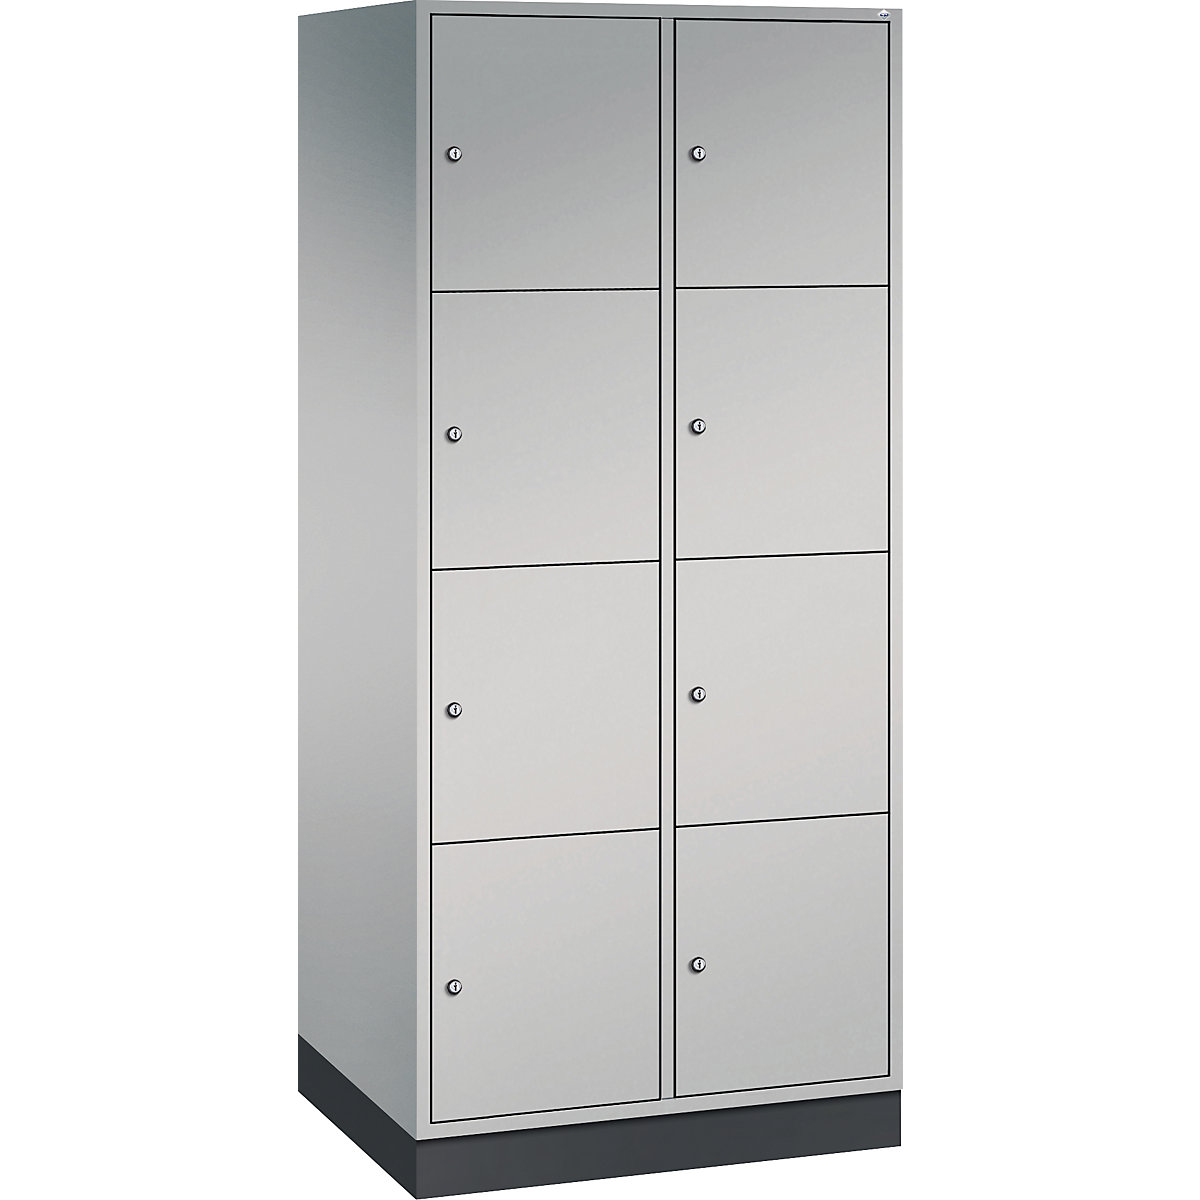 INTRO steel compartment locker, compartment height 435 mm – C+P, WxD 820 x 600 mm, 8 compartments, white aluminium body, white aluminium doors